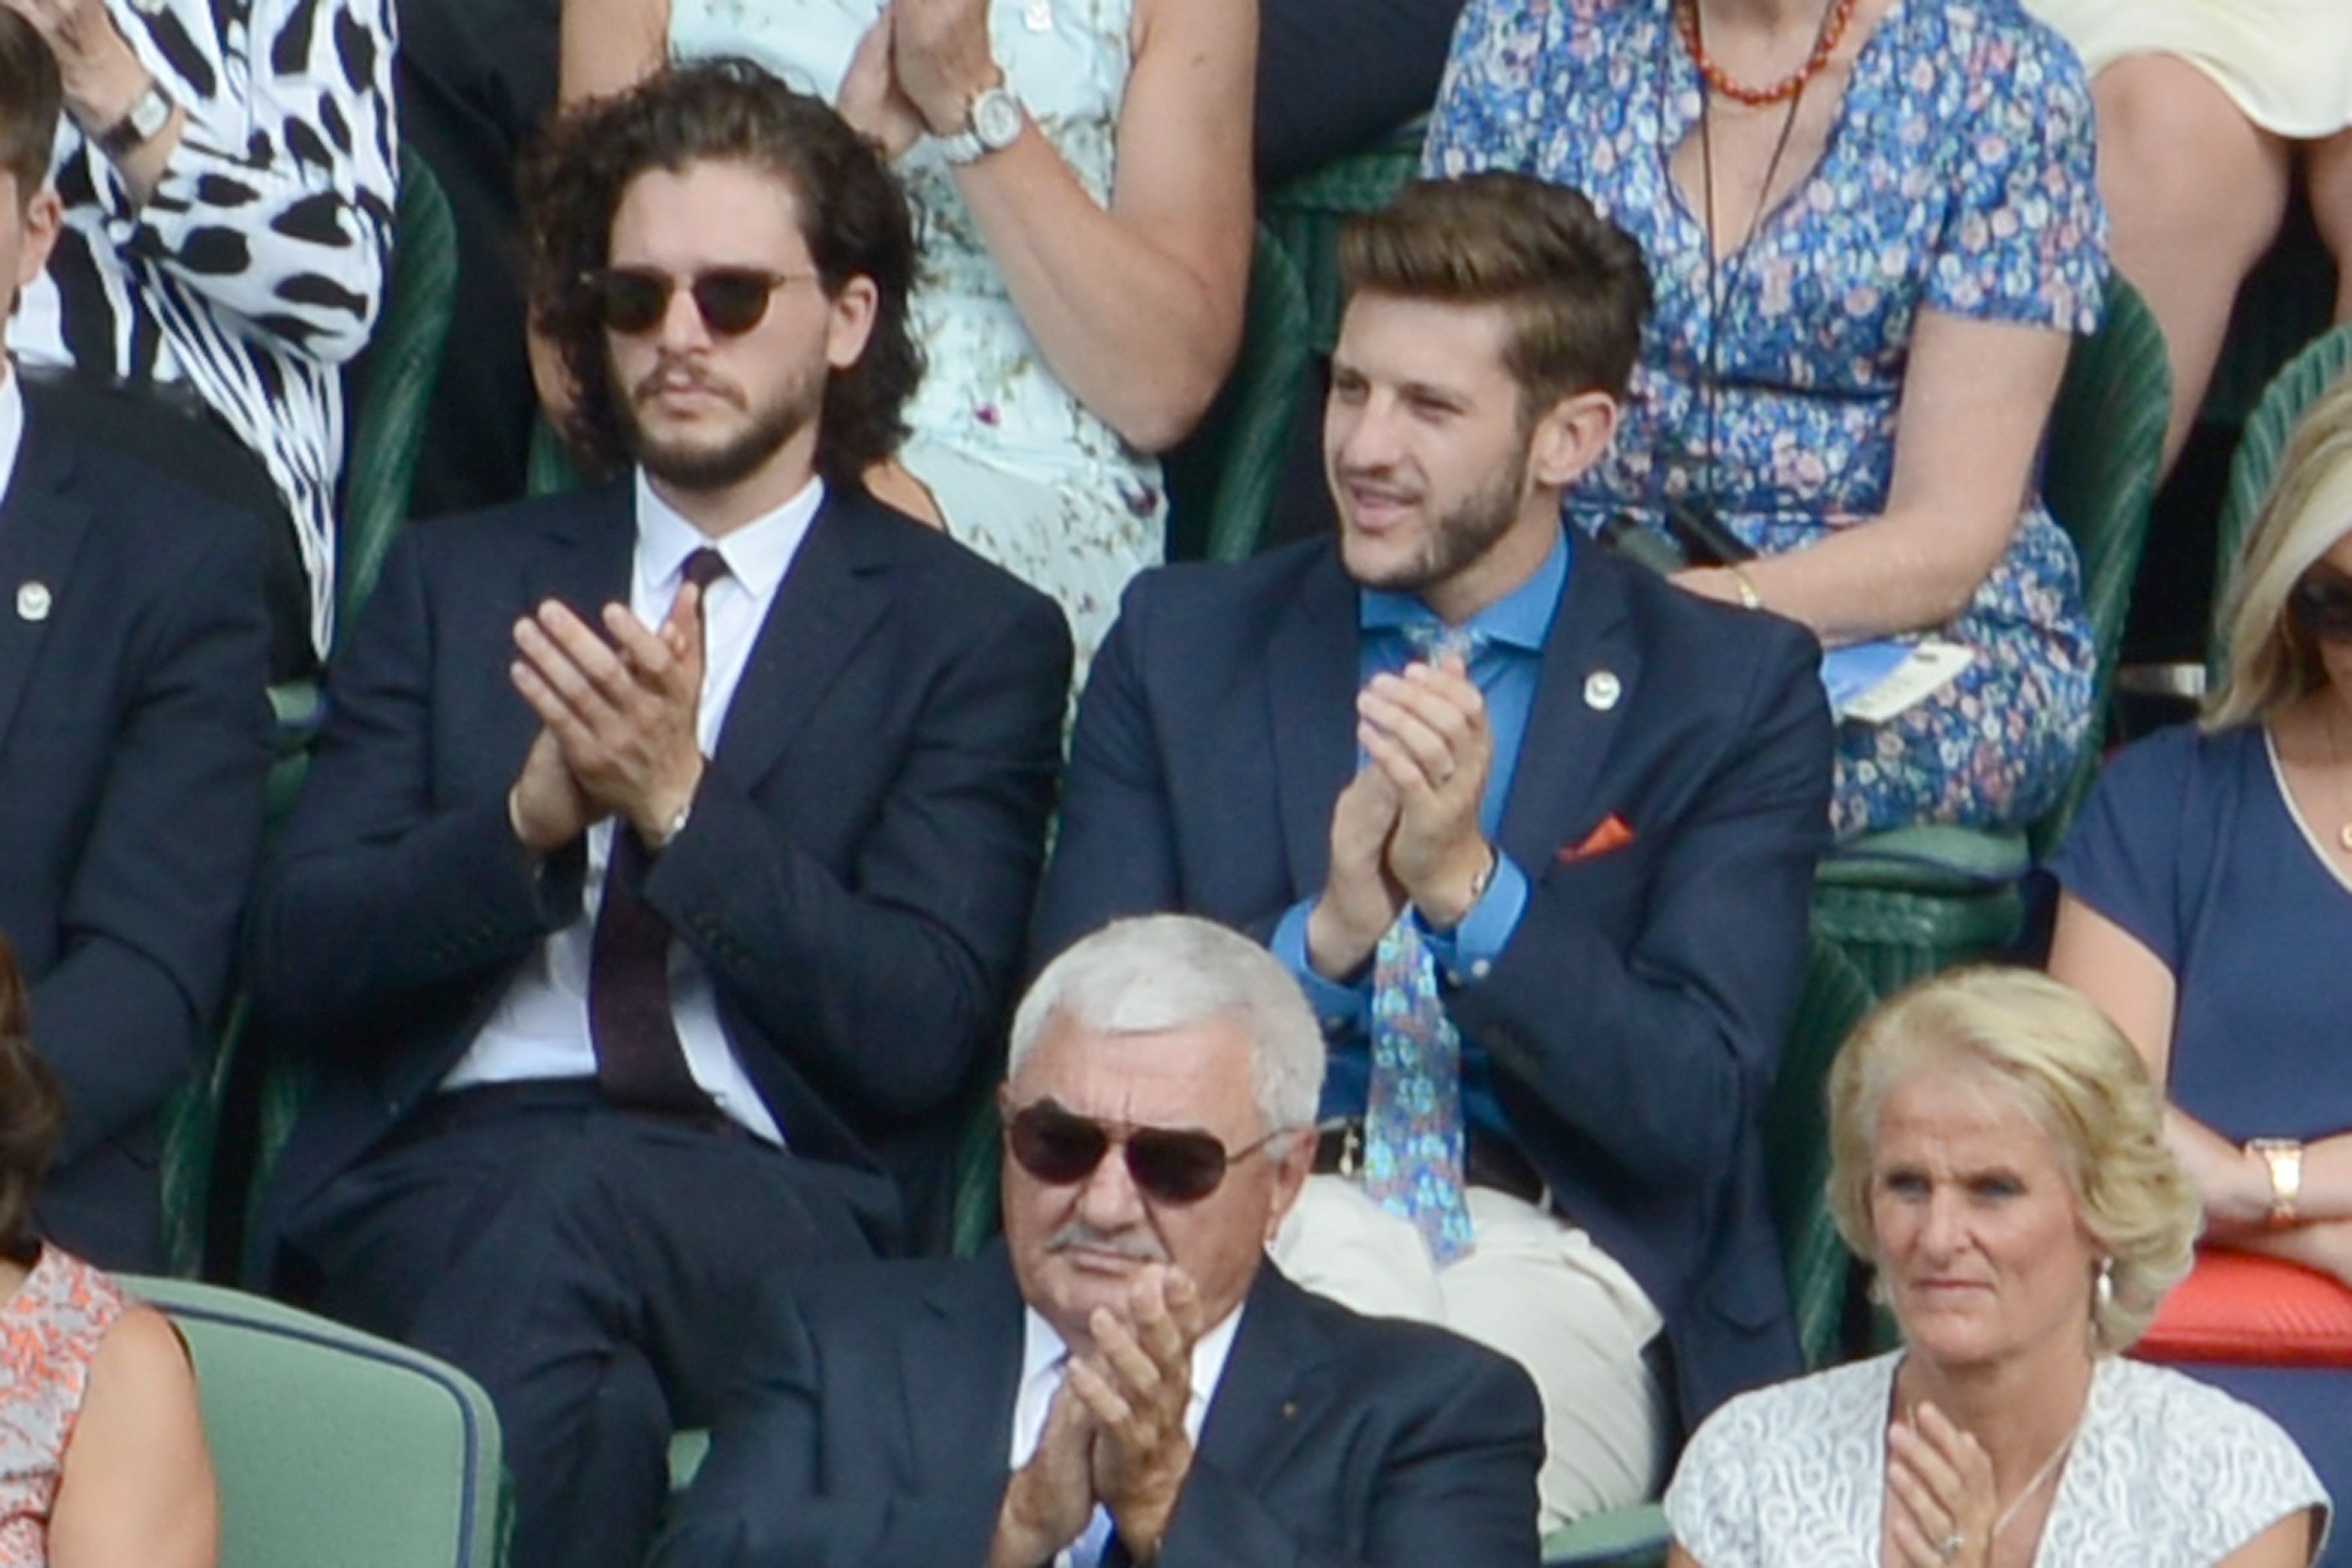 Kit Harrington attends Wimbledon in London on July 2, 2015. (Splash News/Corbis)